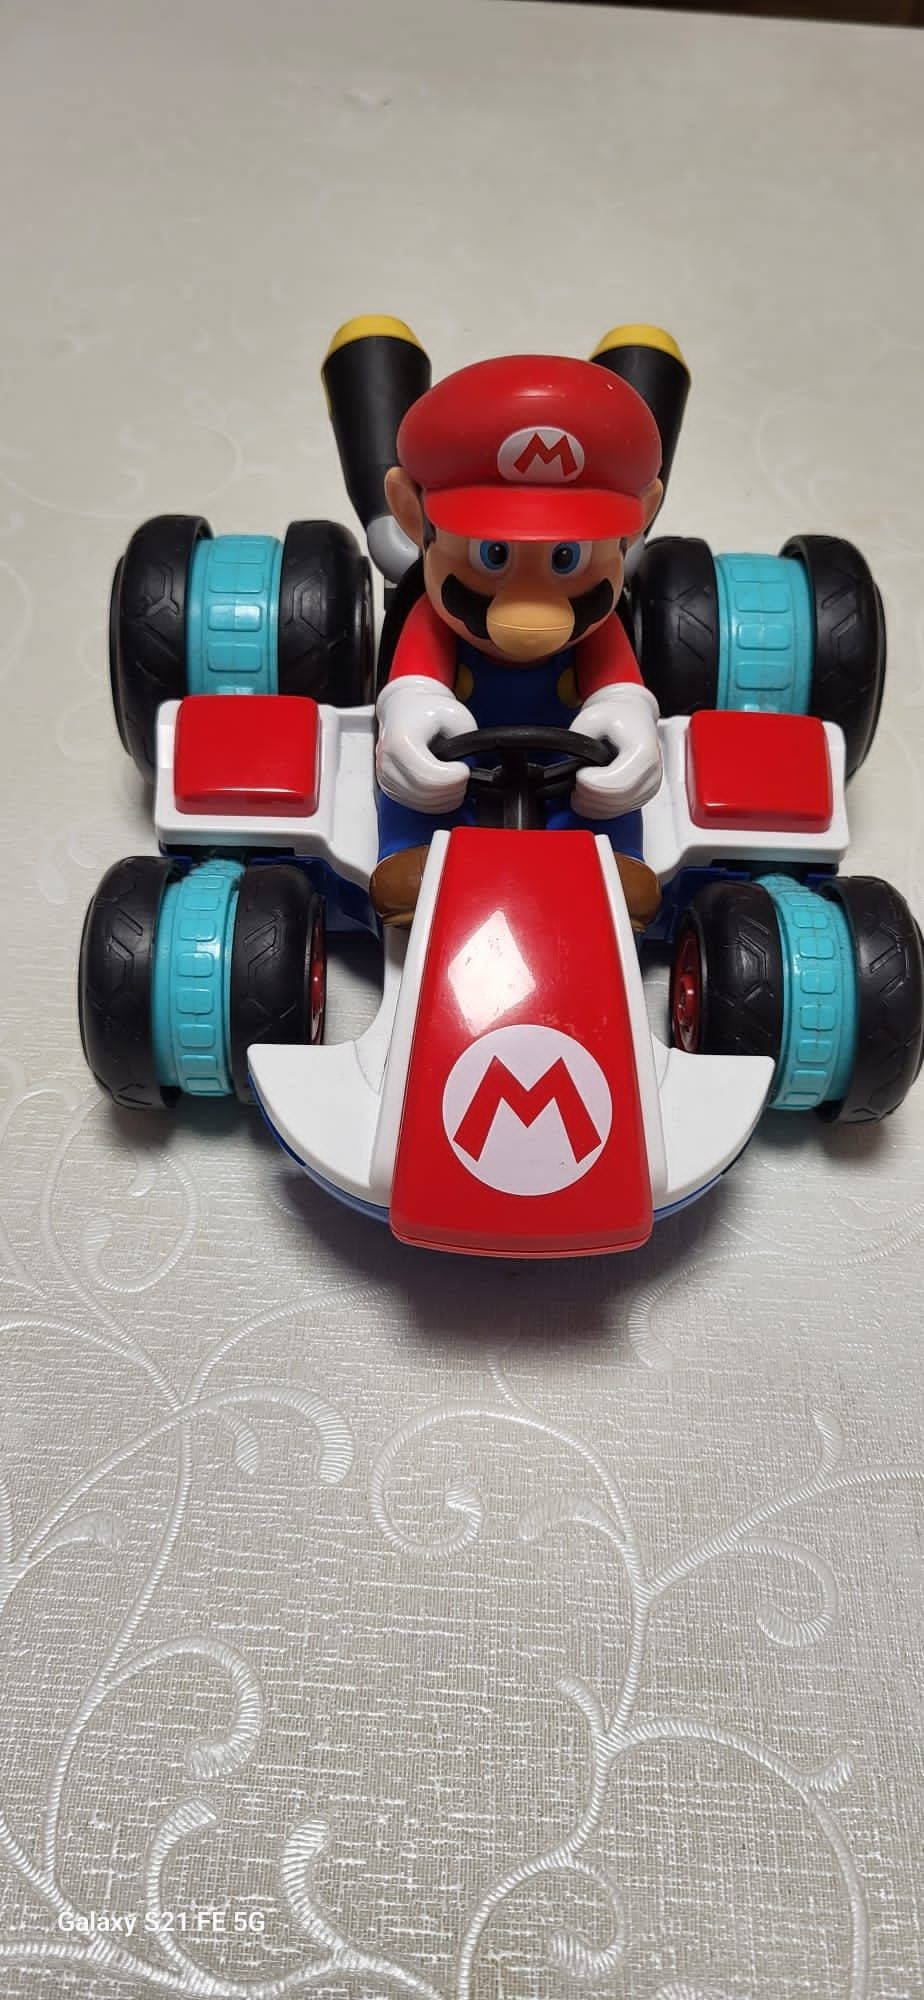 Mașina Mariokart.